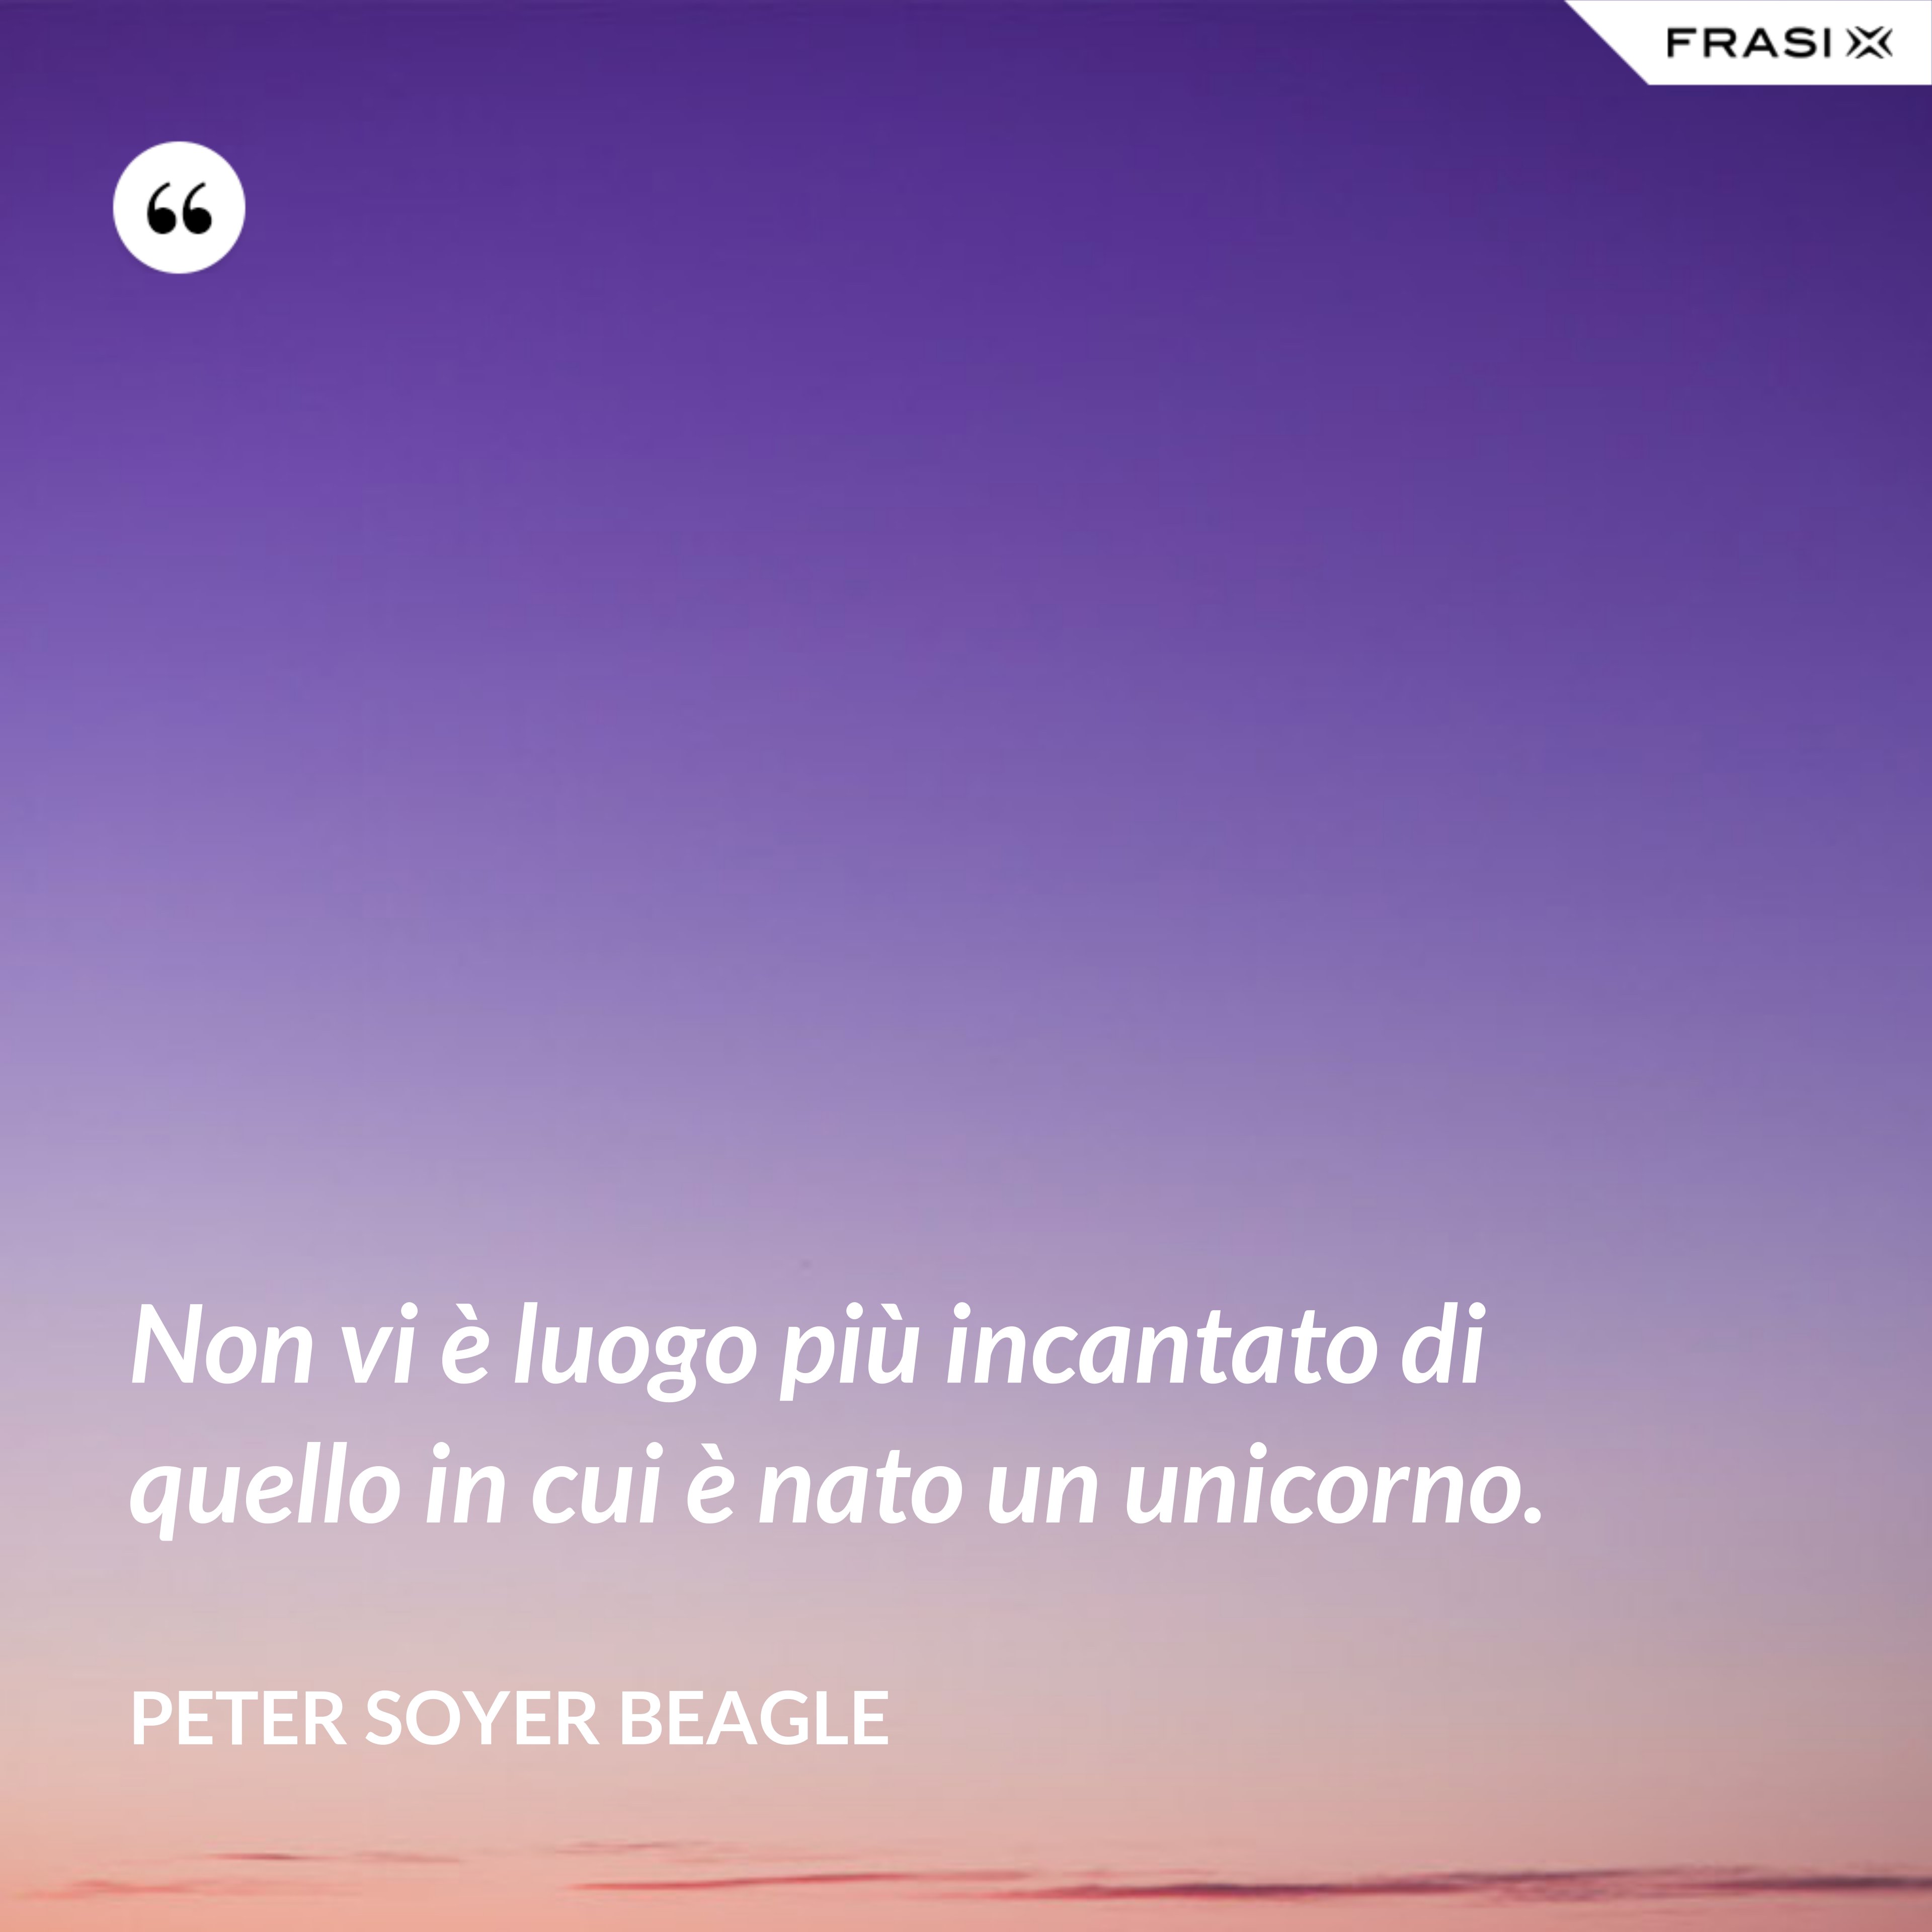 Non vi è luogo più incantato di quello in cui è nato un unicorno. - Peter Soyer Beagle